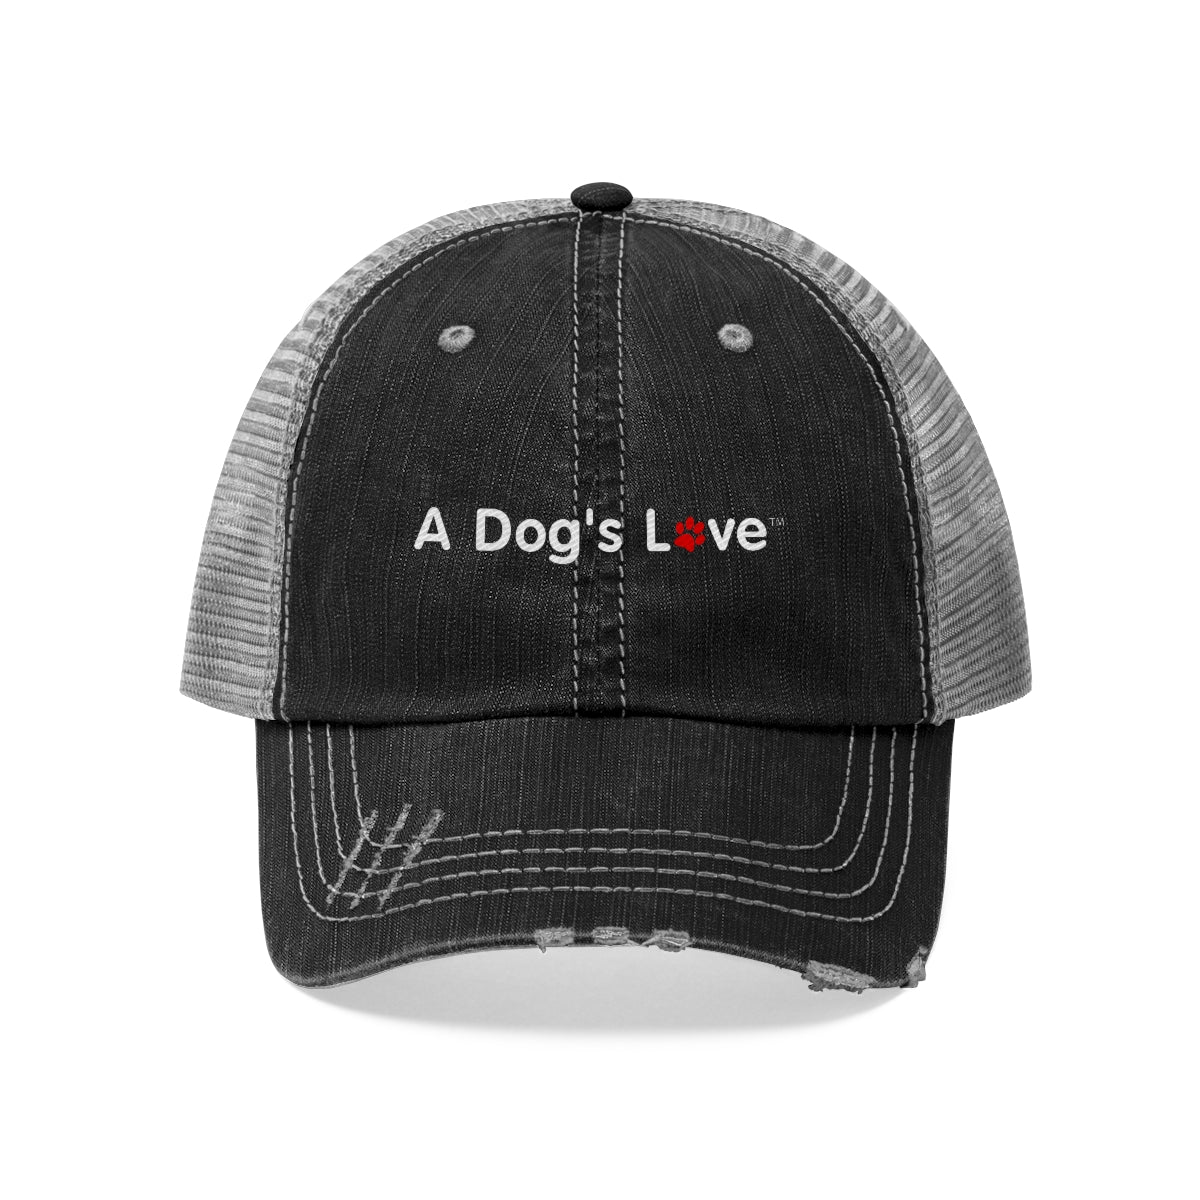 A Dog's Love - Unisex Trucker Hat